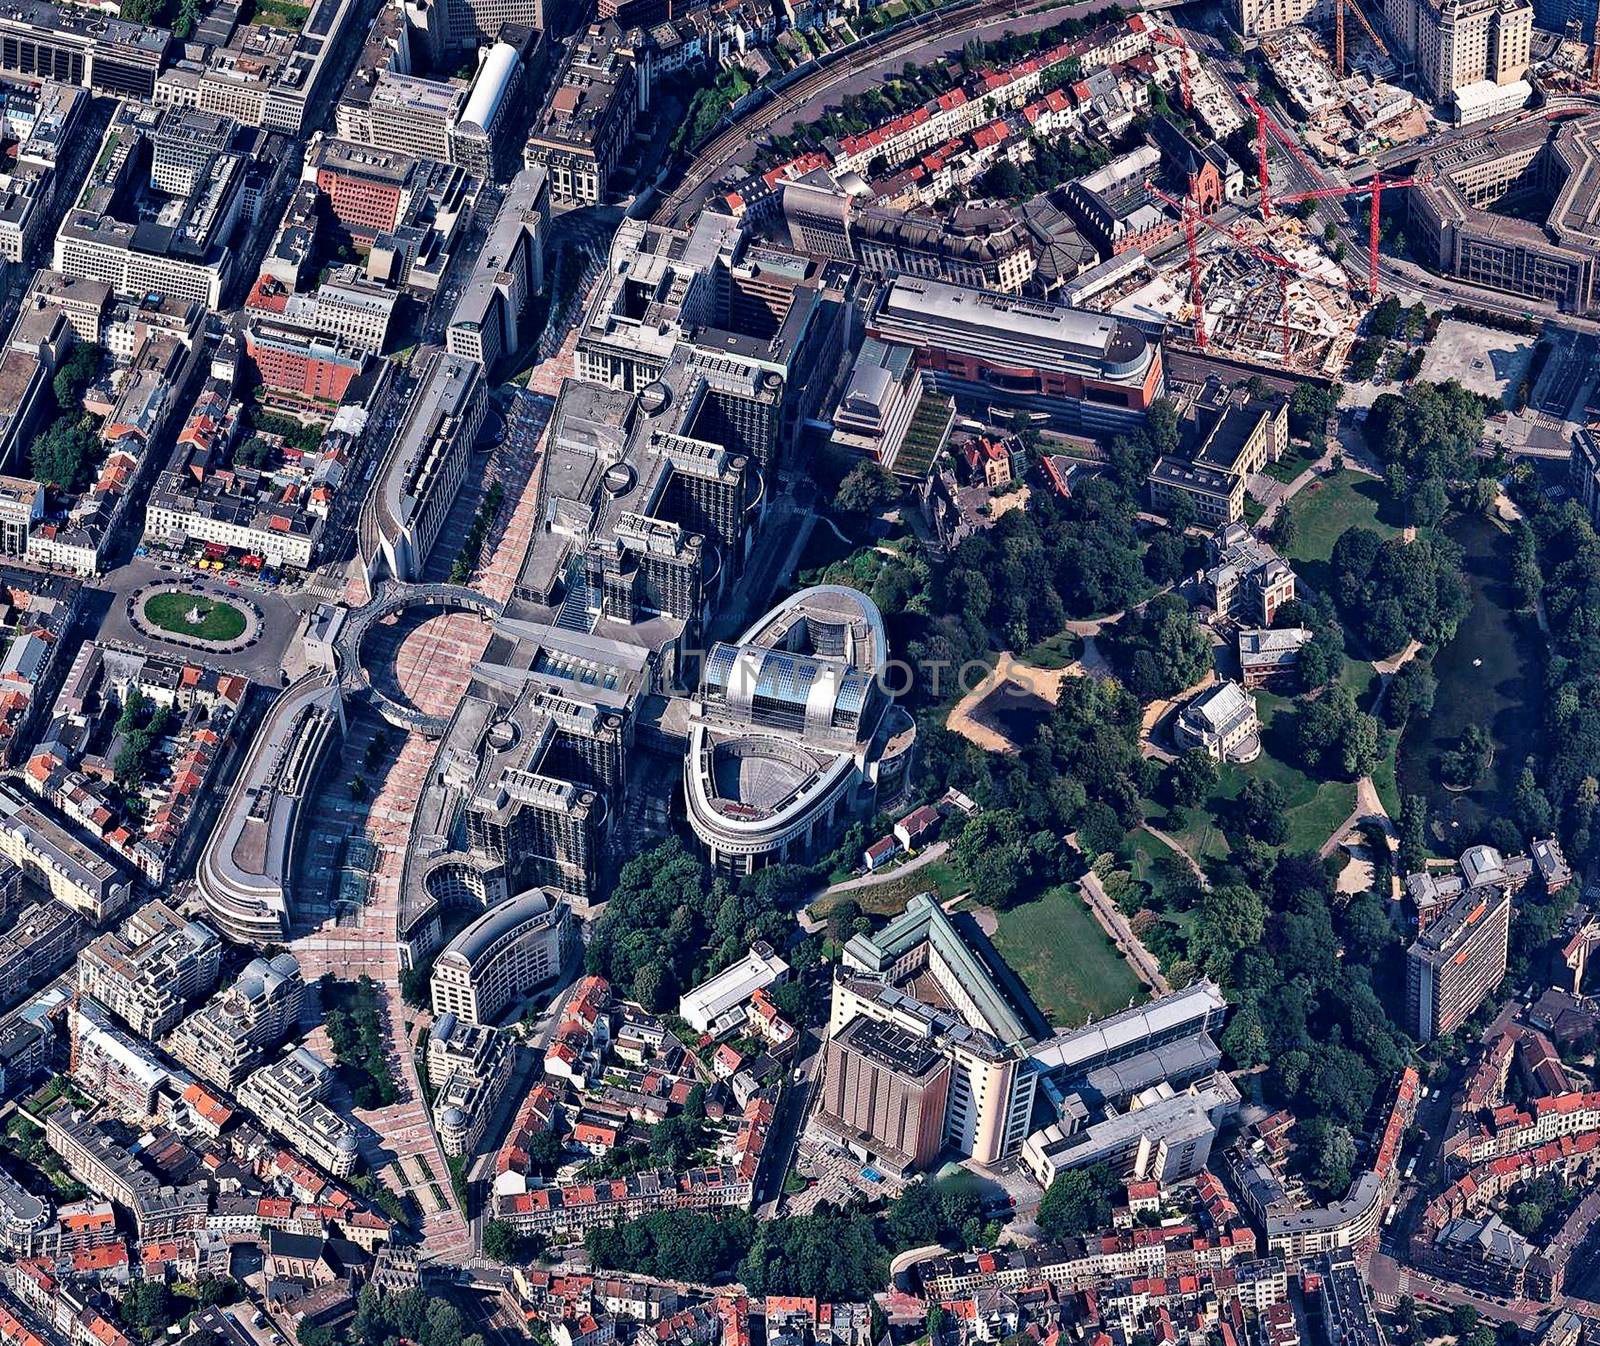 European Parliament Brussels Belgium aerial view